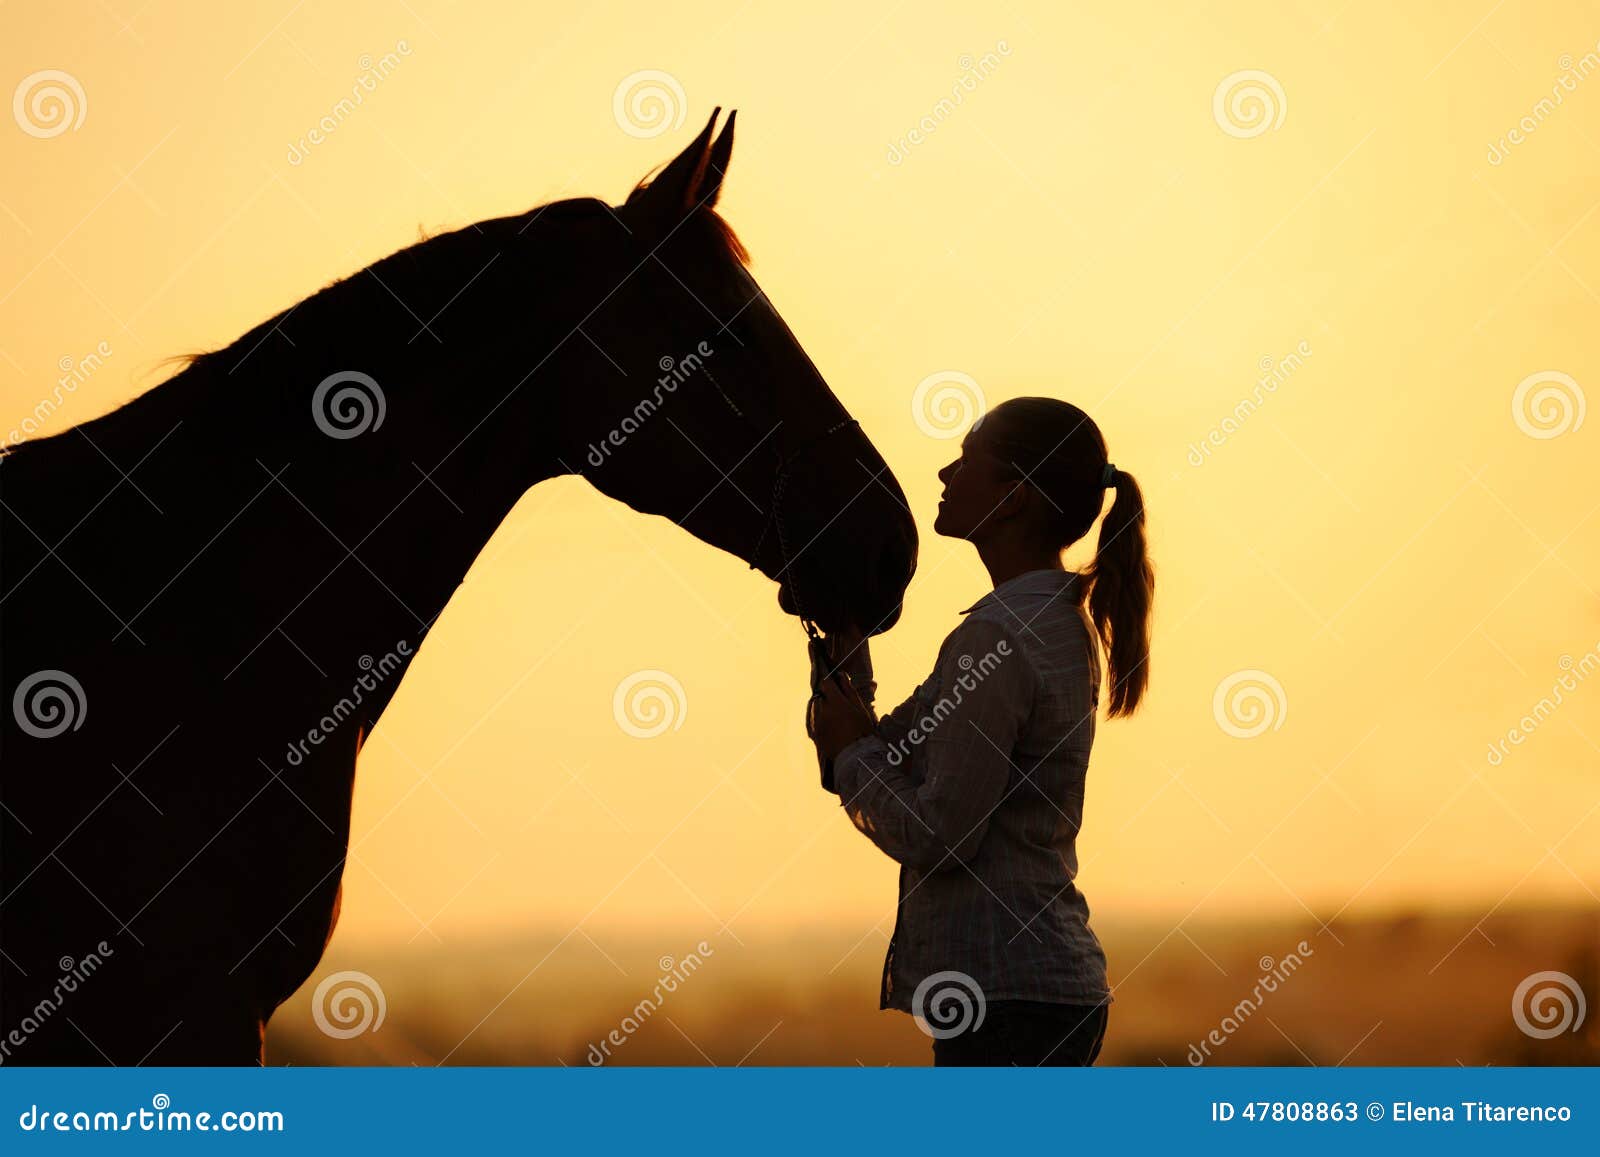 Mulher Bonita Sorrindo Em Frente Ao Cavalo No Pôr Do Sol Imagem de